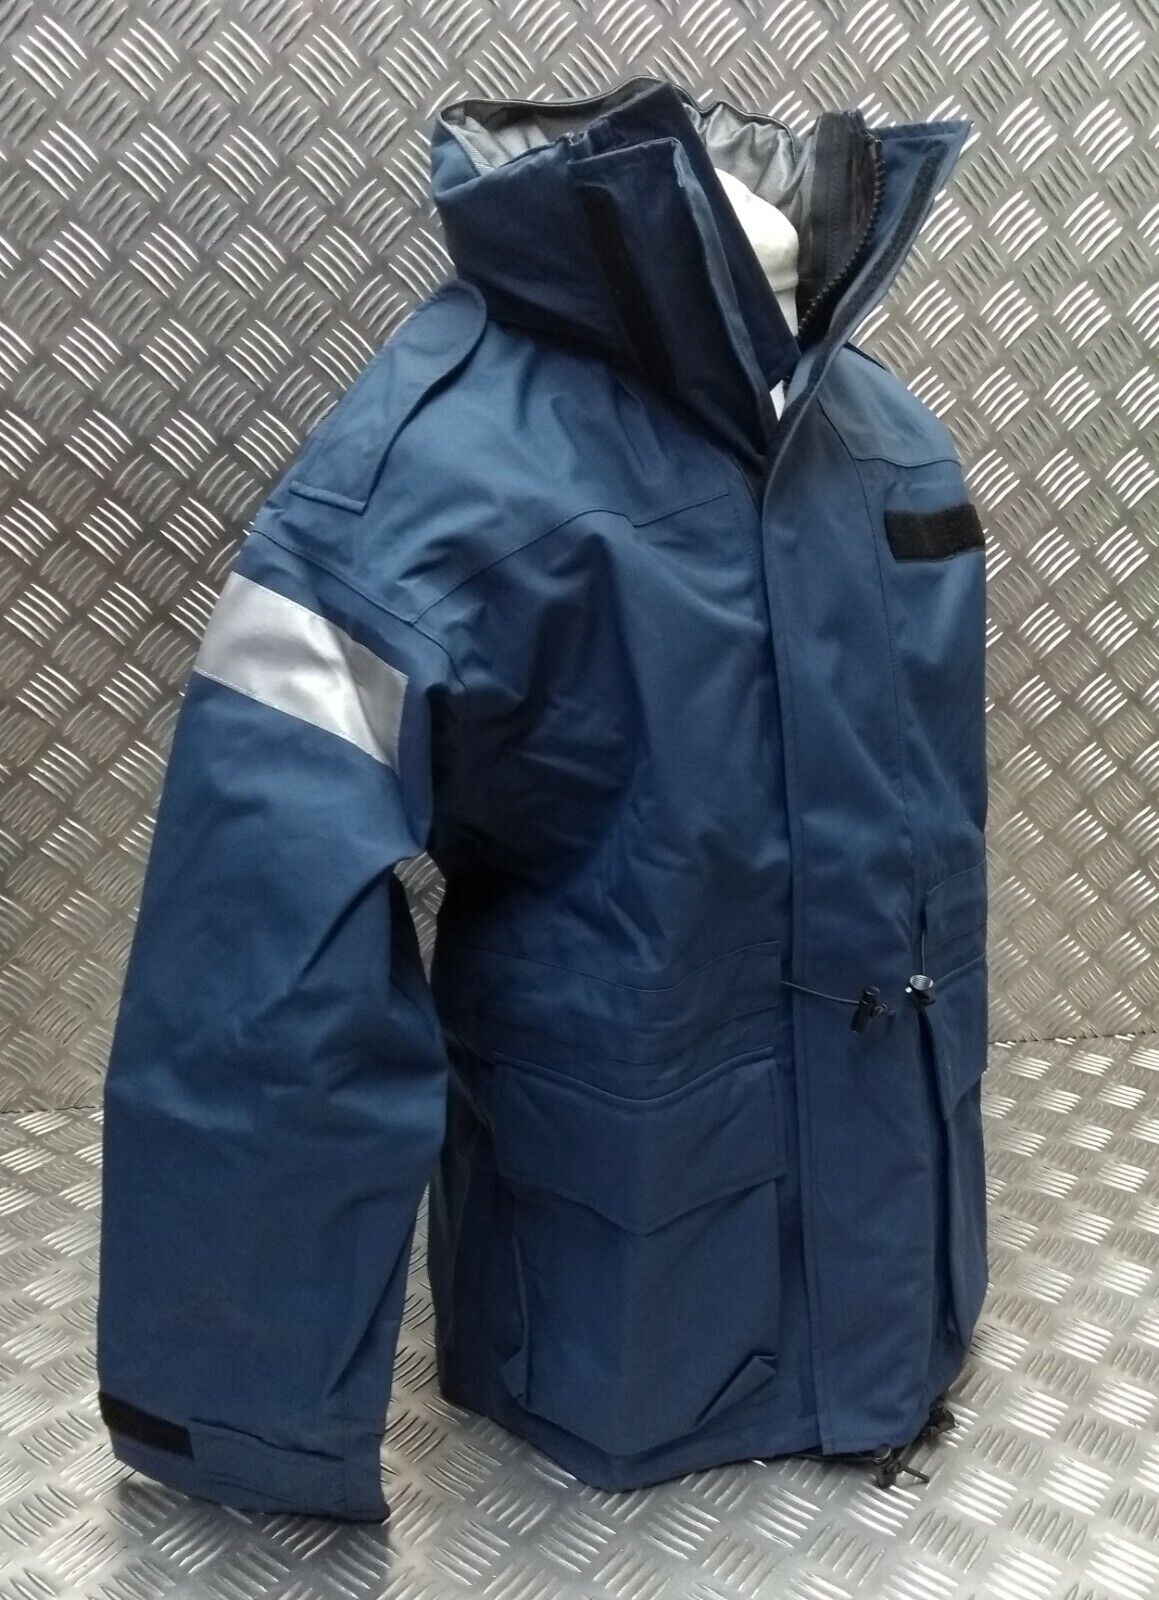 RAF MVP Jacket Breathable & Waterproof Royal Air Force Issue Concealed Hood